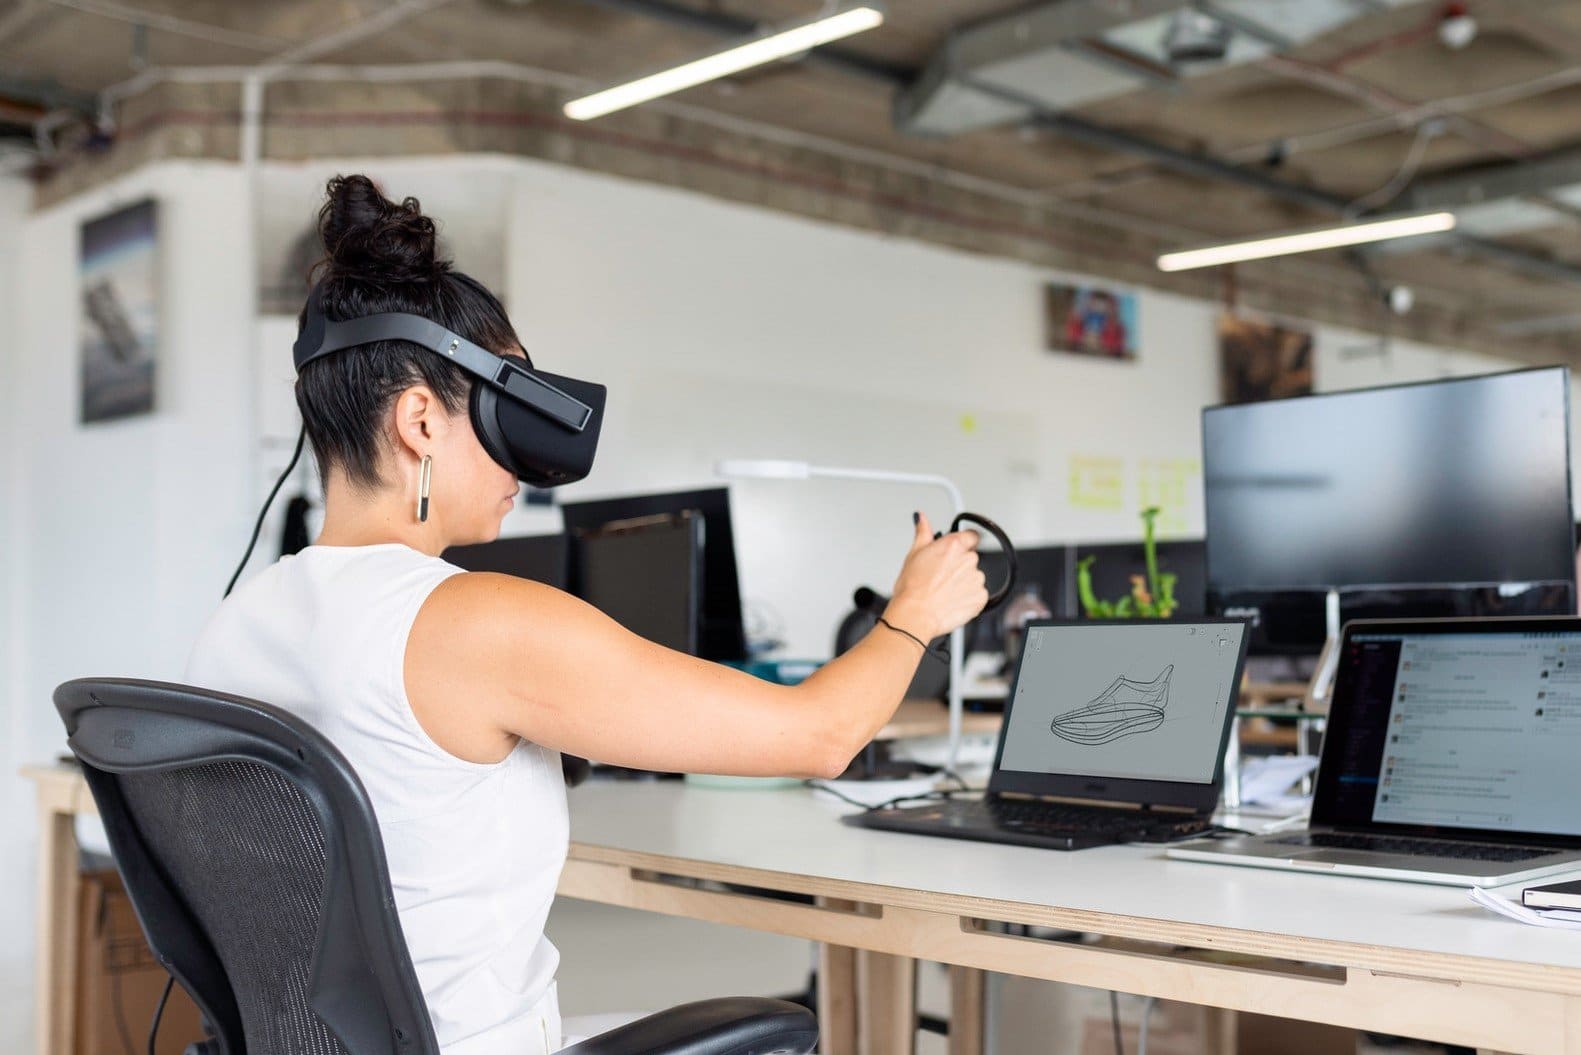 formation nouvelle technologie, un team building à distance en VR est interactif